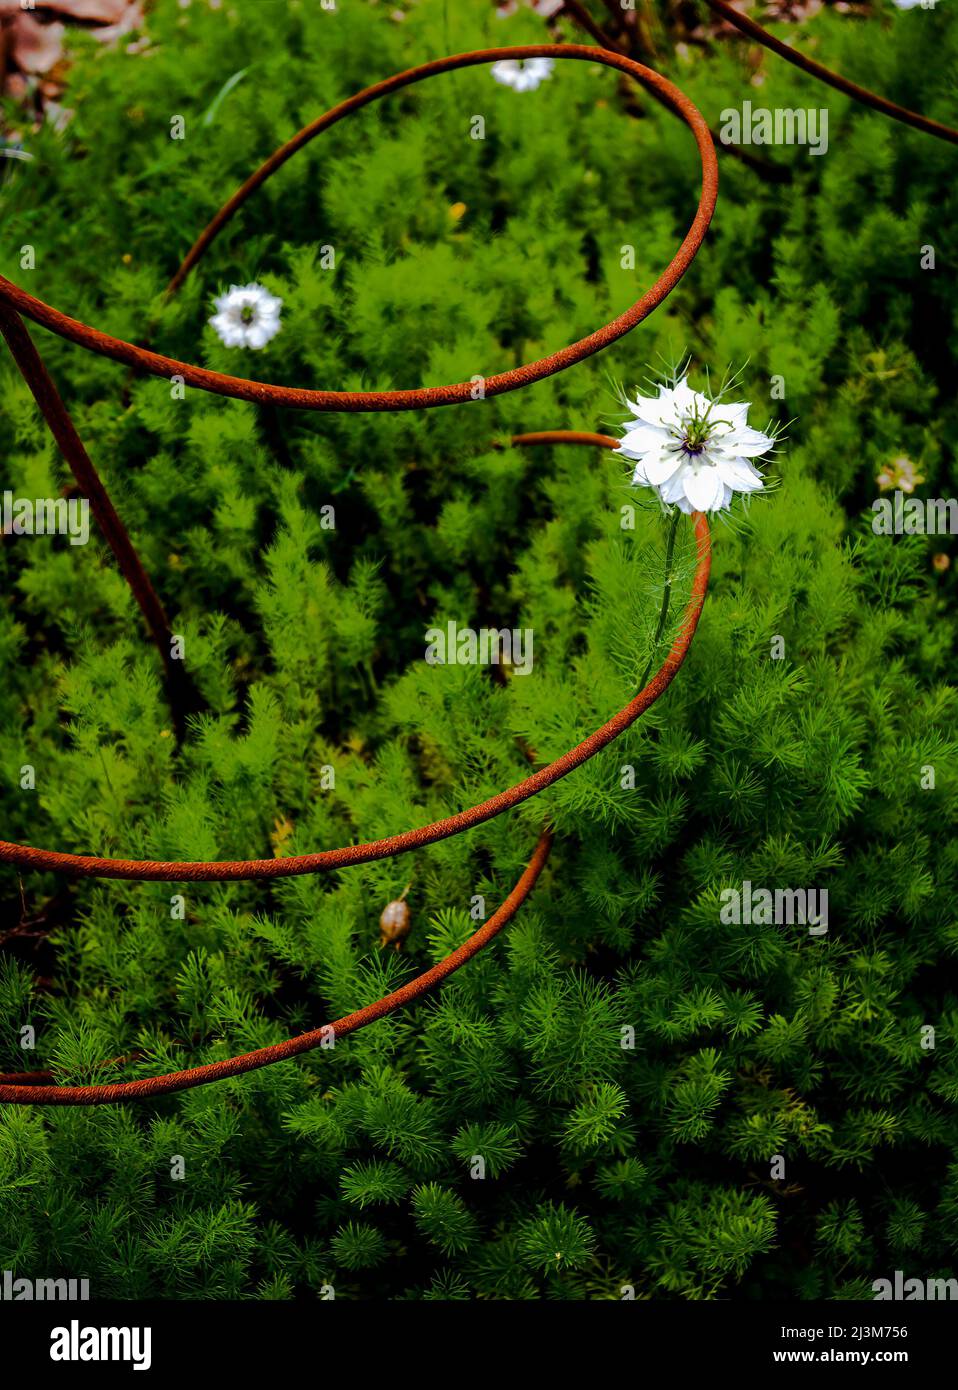 Dieser Draht unterstützt junge Pflanzen, um in einem Garten zu wachsen. Die Drahtschleife sieht endlos aus... Stockfoto